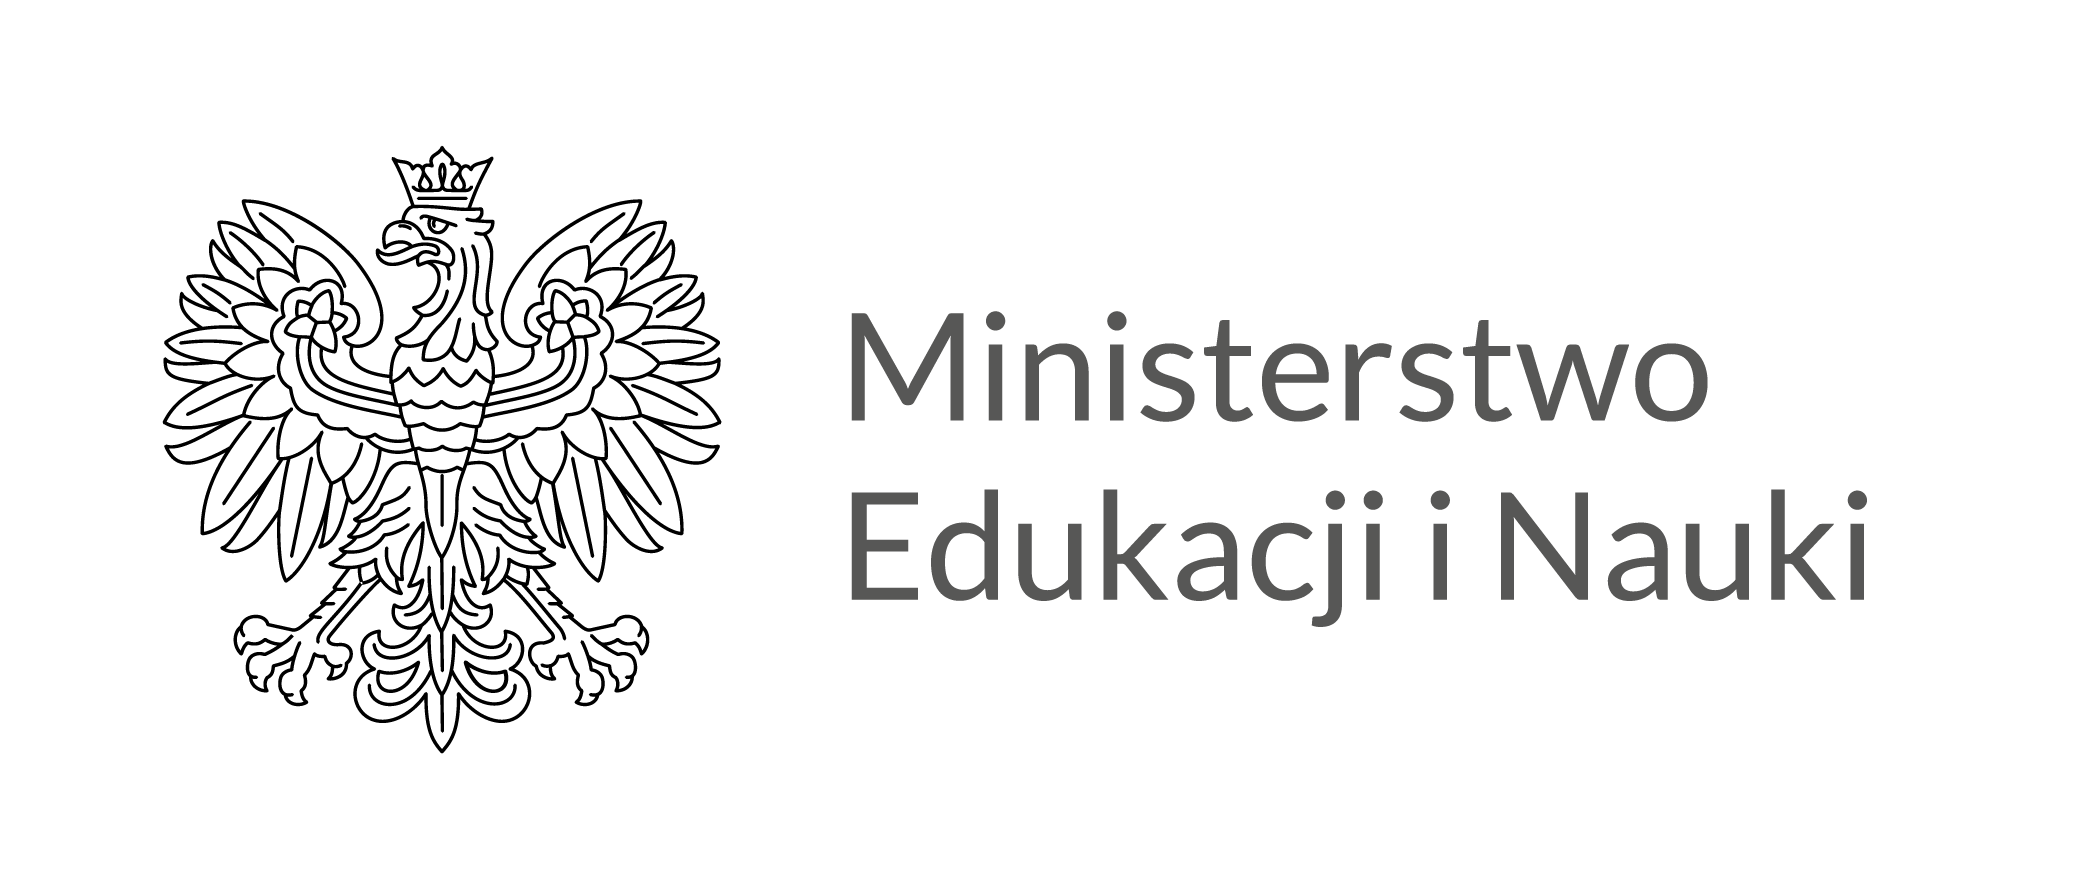 Ministerstwo edukacji i nauki